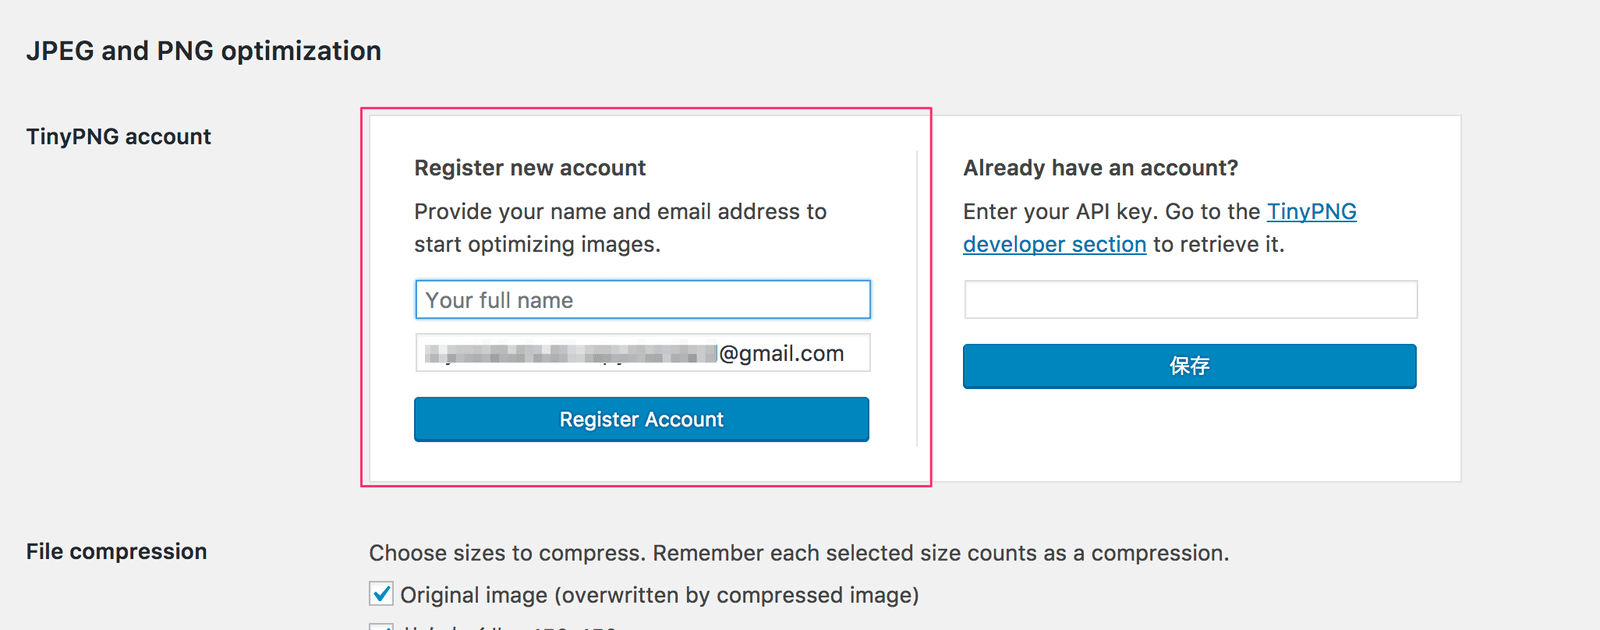 APIキー取得のためにアカウント名とメールアドレスを入力